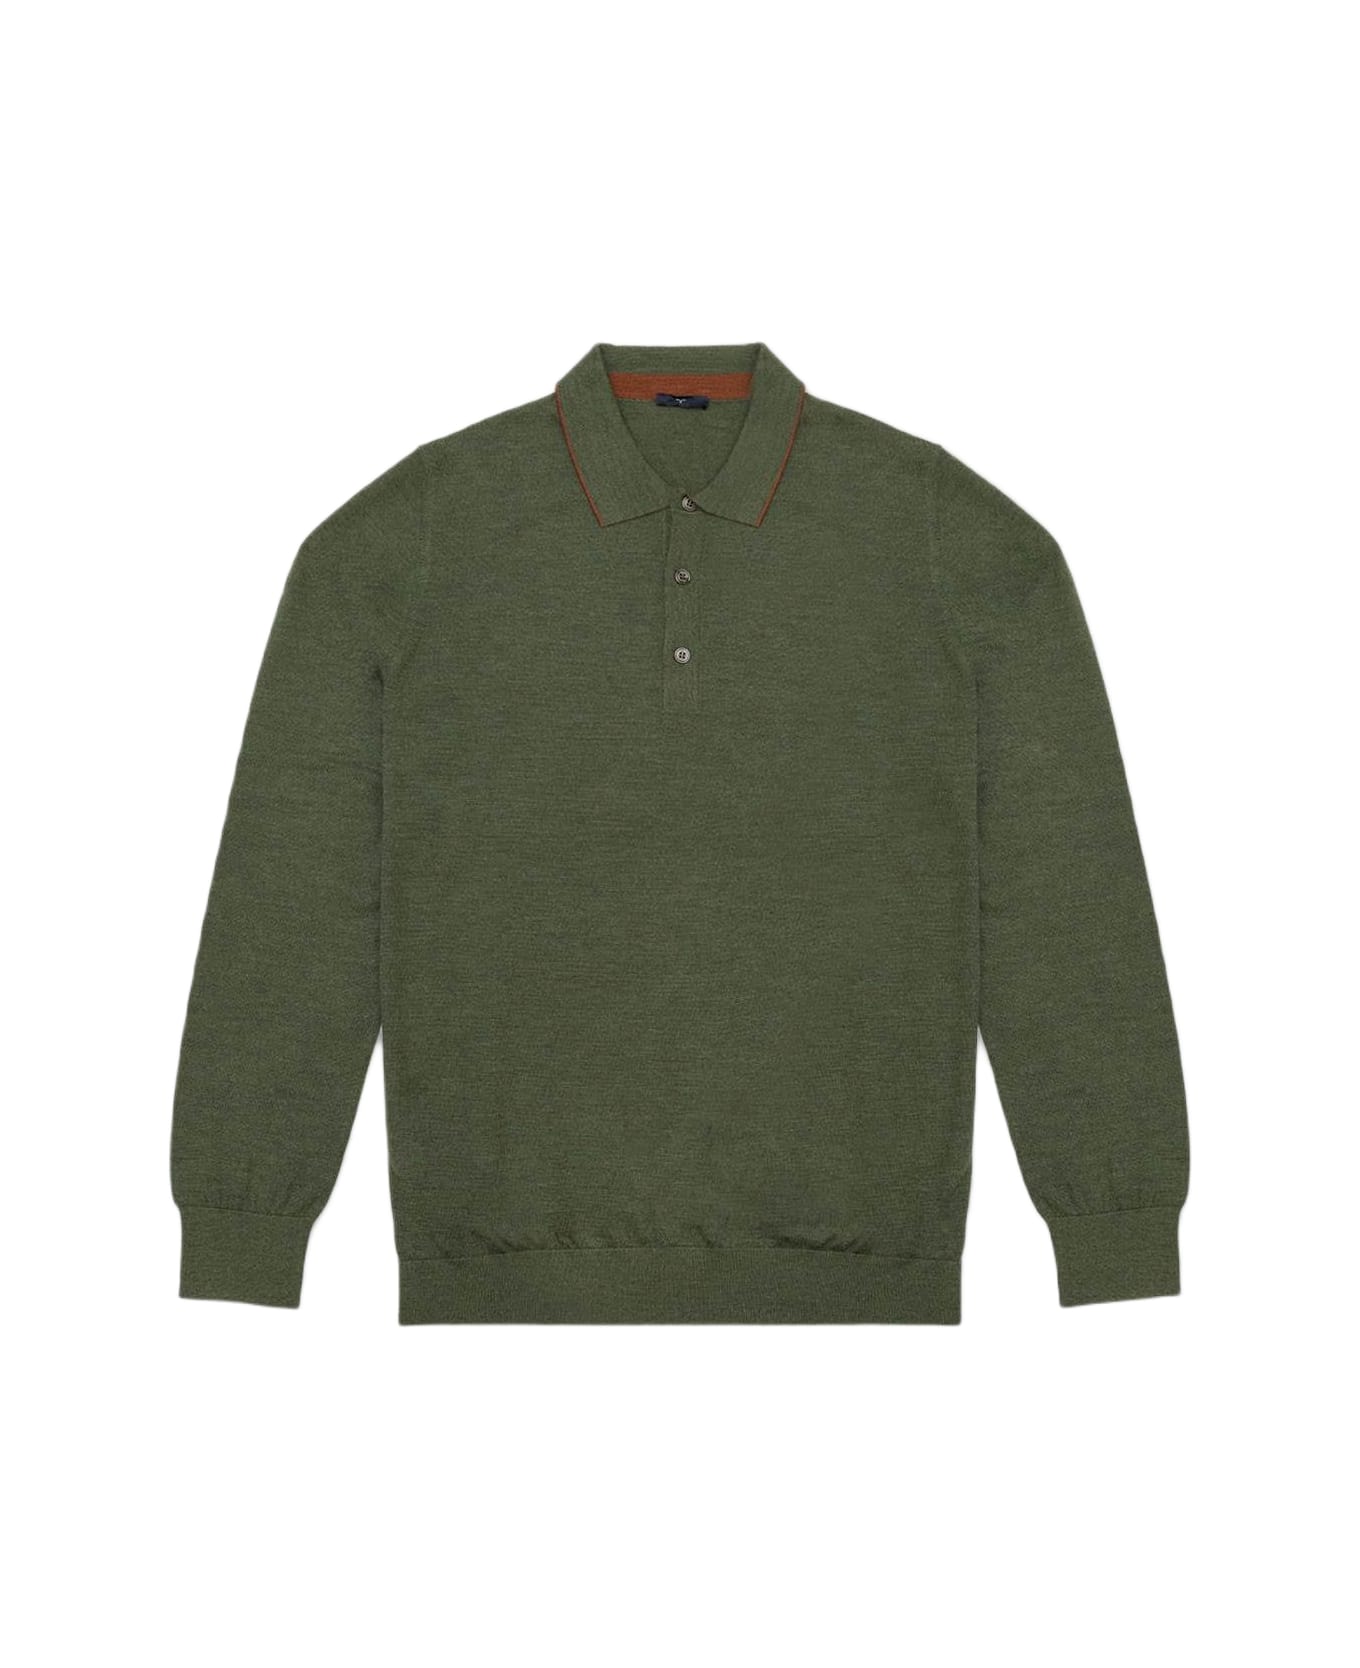 Larusmiani Long Sleeve Polo Shirt Sweater - Olive